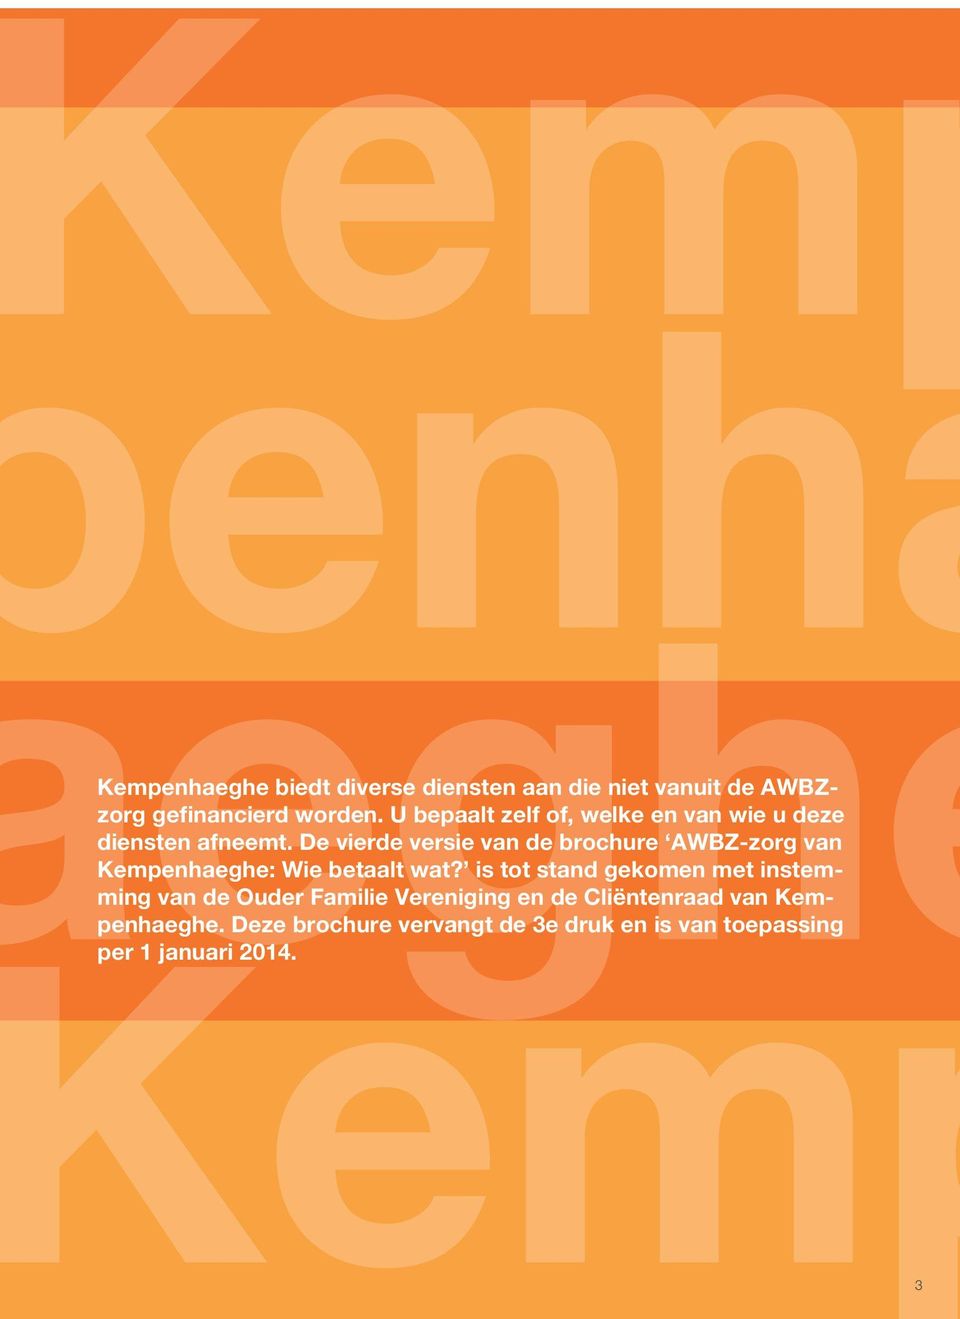 De vierde versie van de brochure AWBZ-zorg van Kempenhaeghe: Wie betaalt wat?